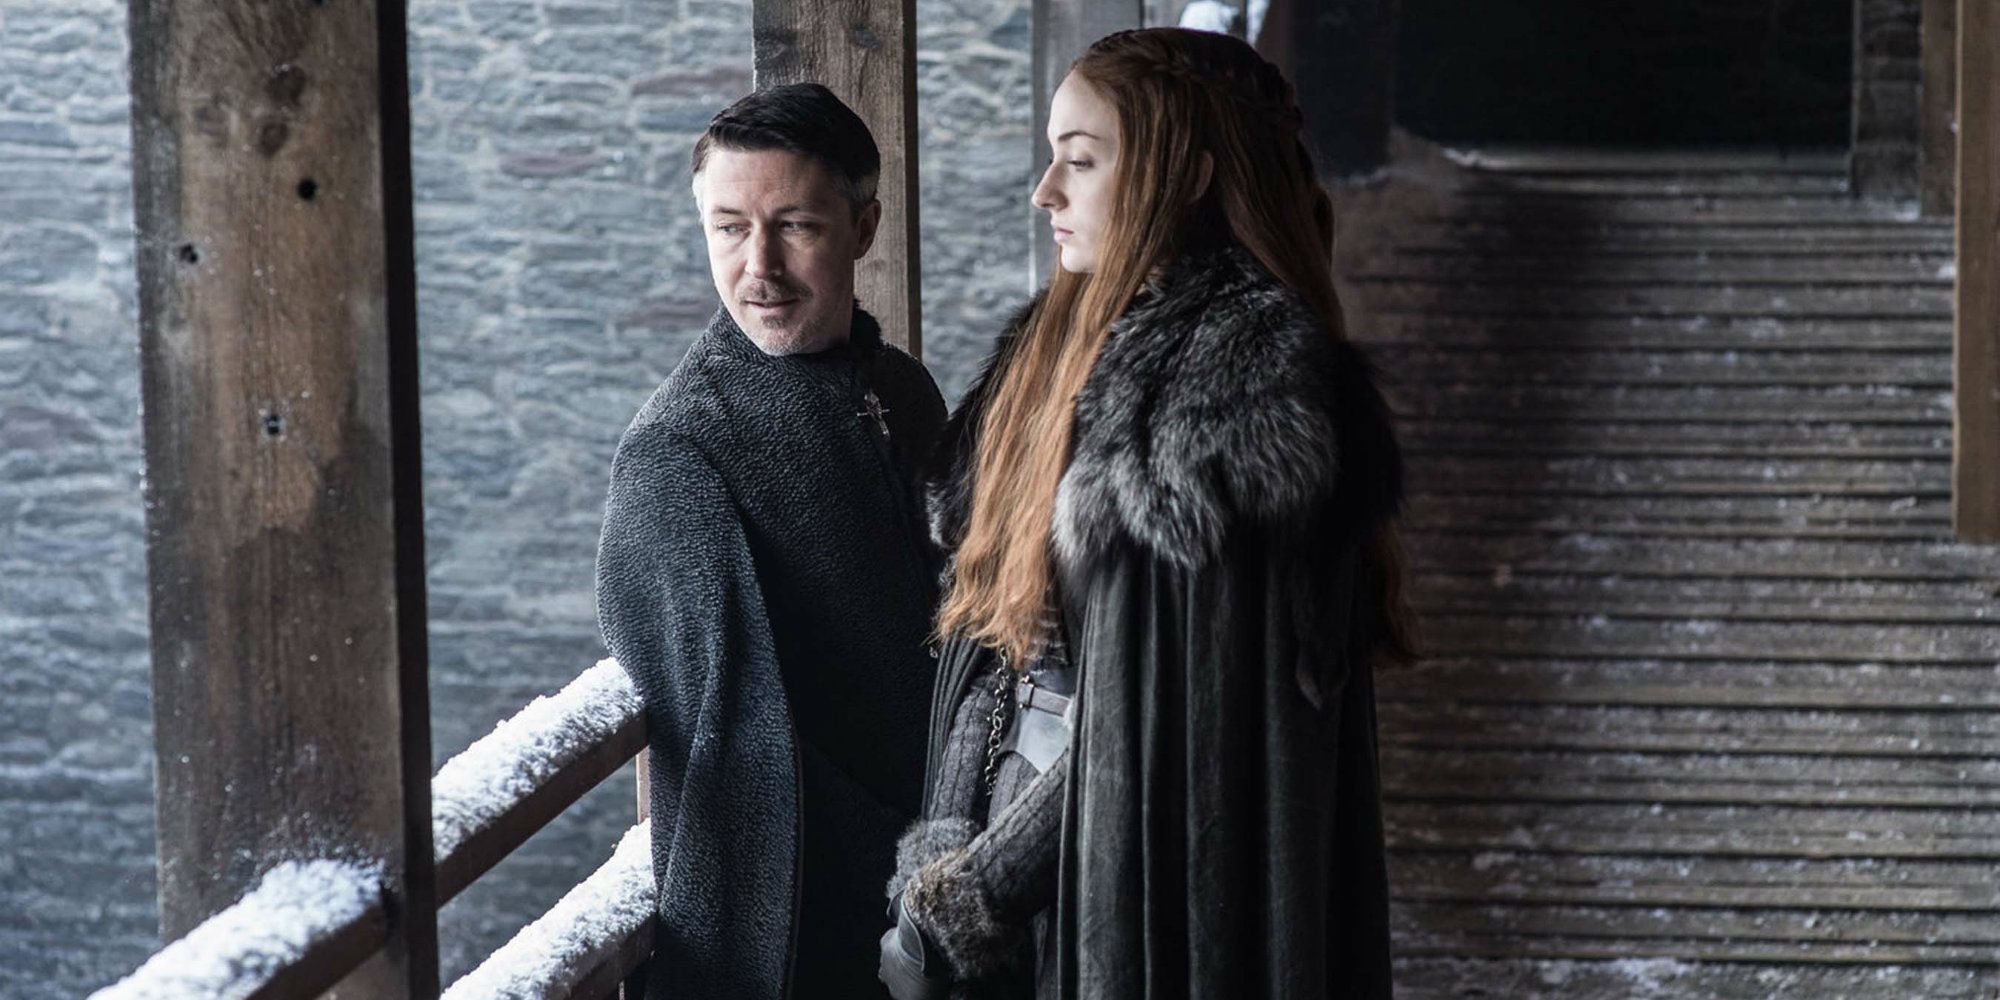 Littlefinger and Sansa in Game of Thrones season 7